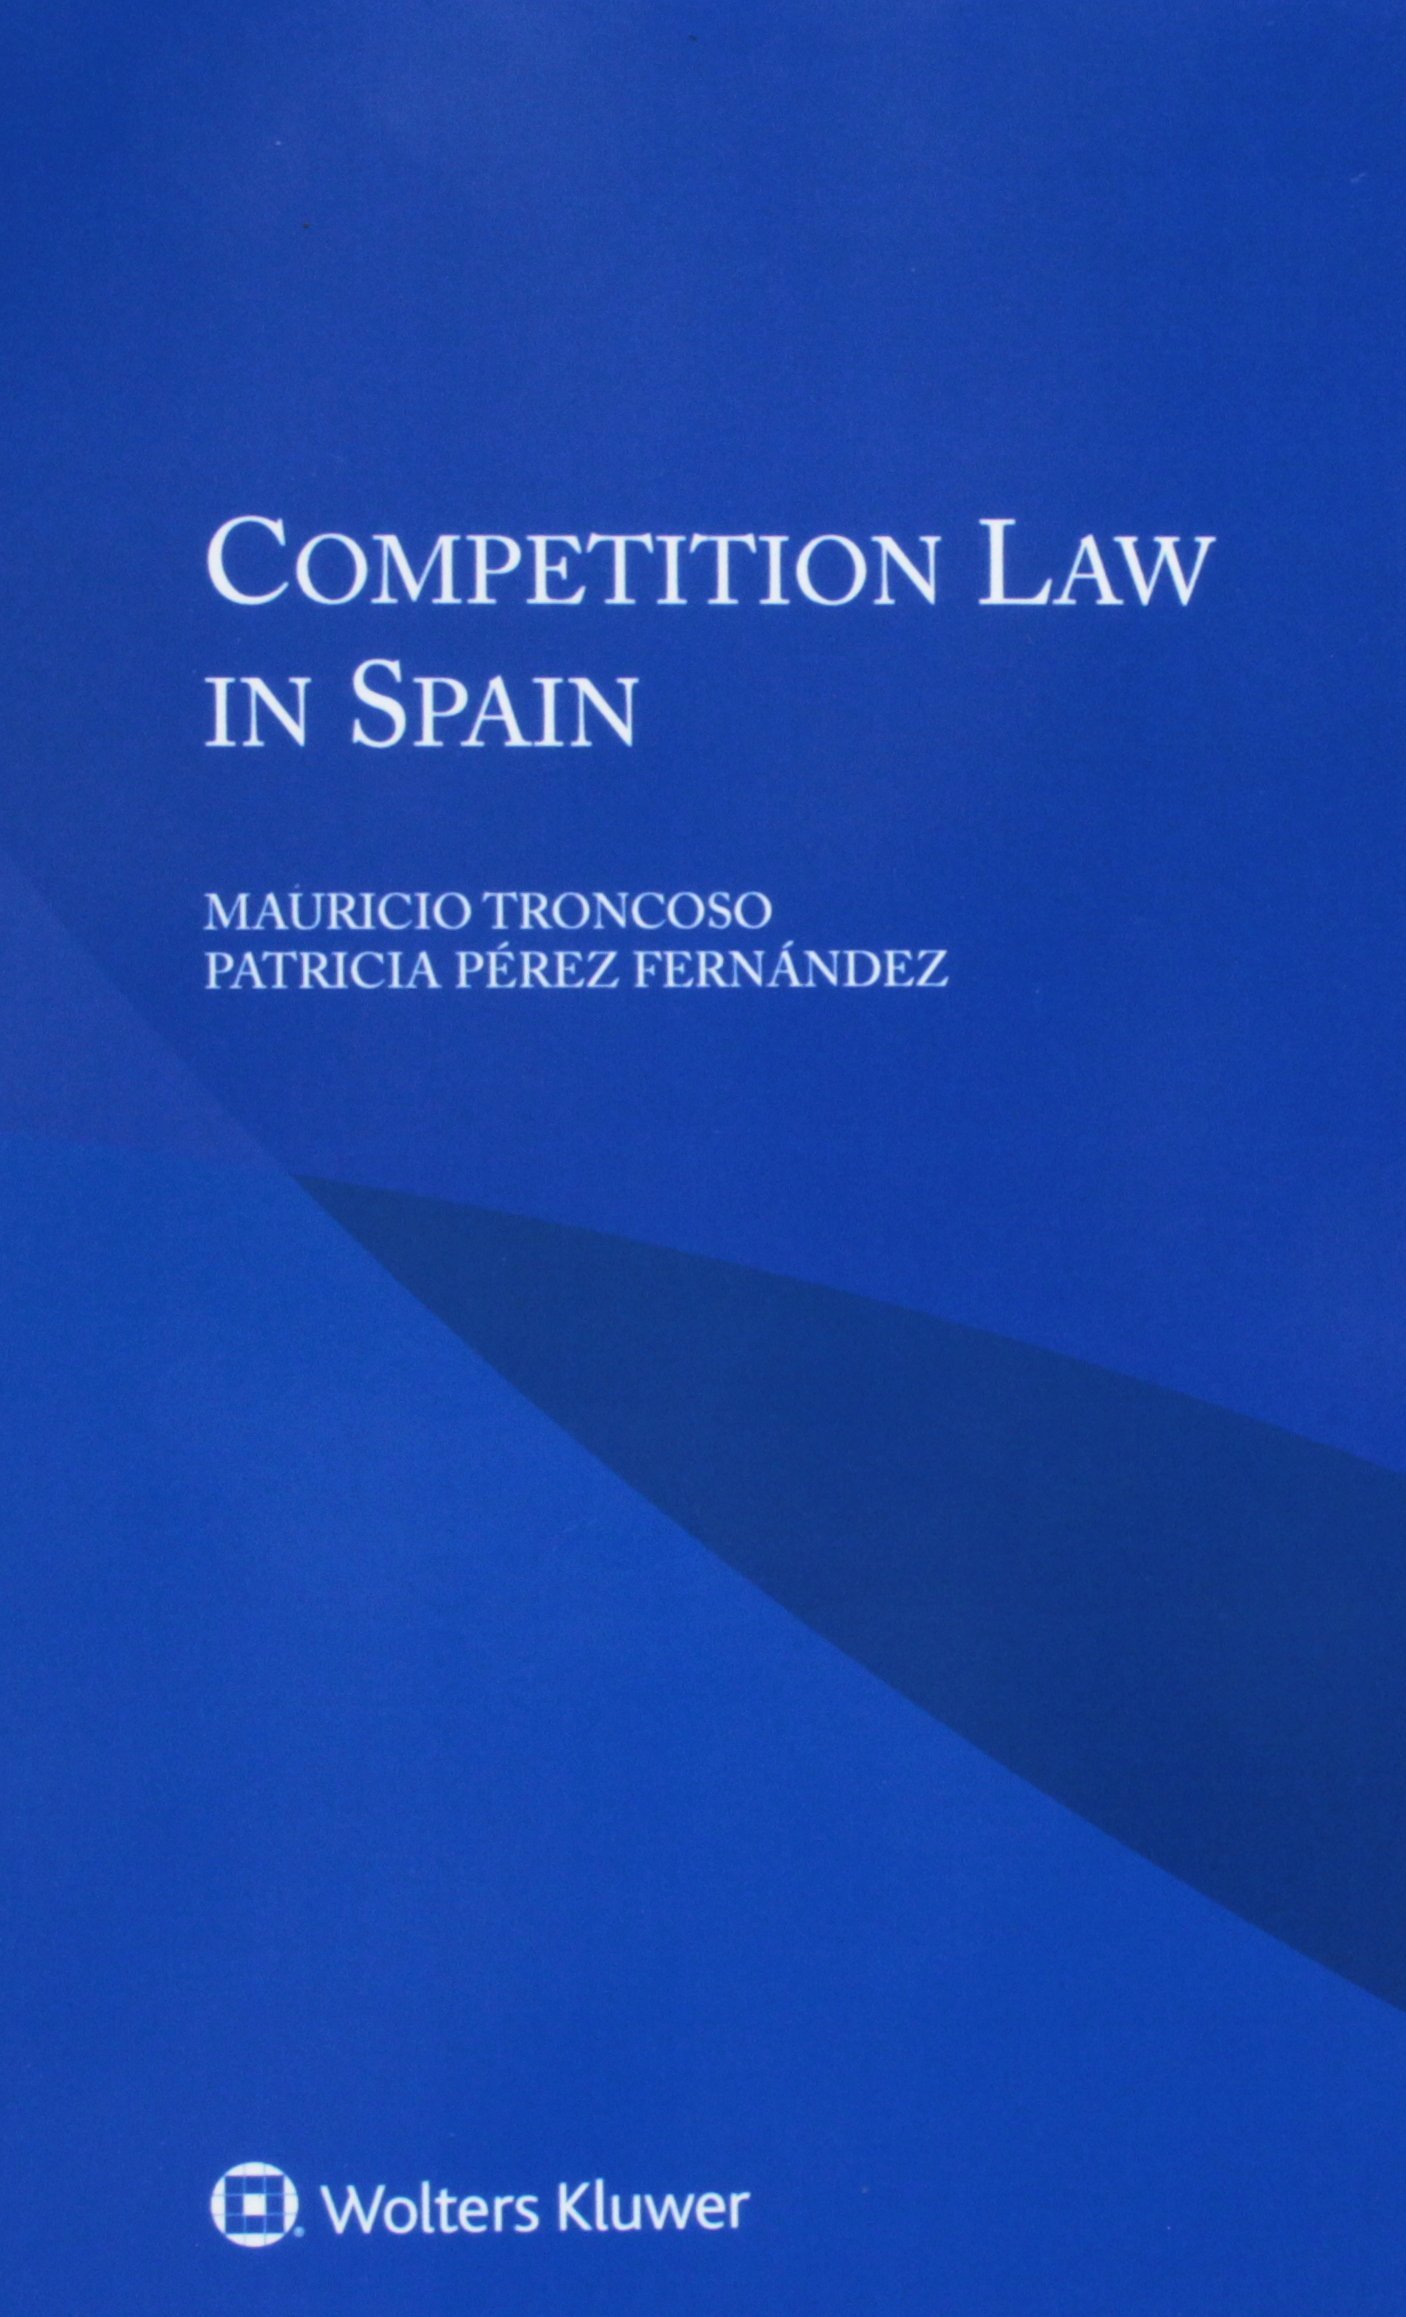 Imagen de portada del libro Competition law in Spain